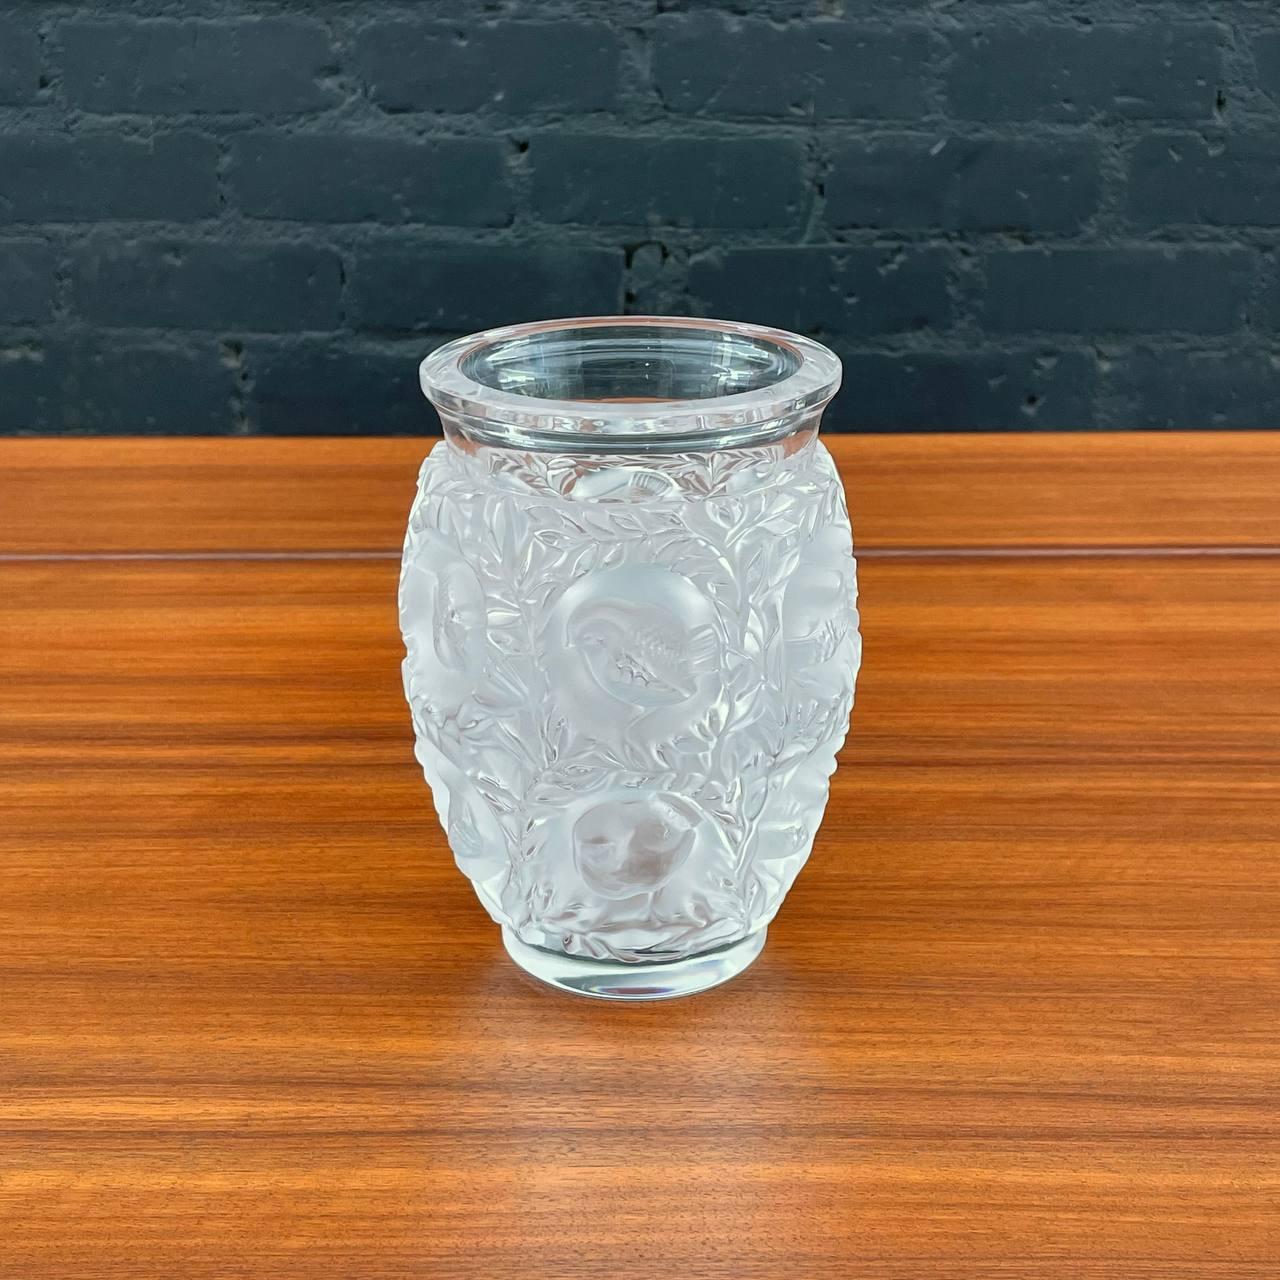 Vase en cristal Bagatelle Lalique

Pays : France
MATERIAL : Verre de cristal
Condit : Condition Vintage Originale
Style : Art Nouveau 
Année : 2 000

$650

Dimensions :
6,75 